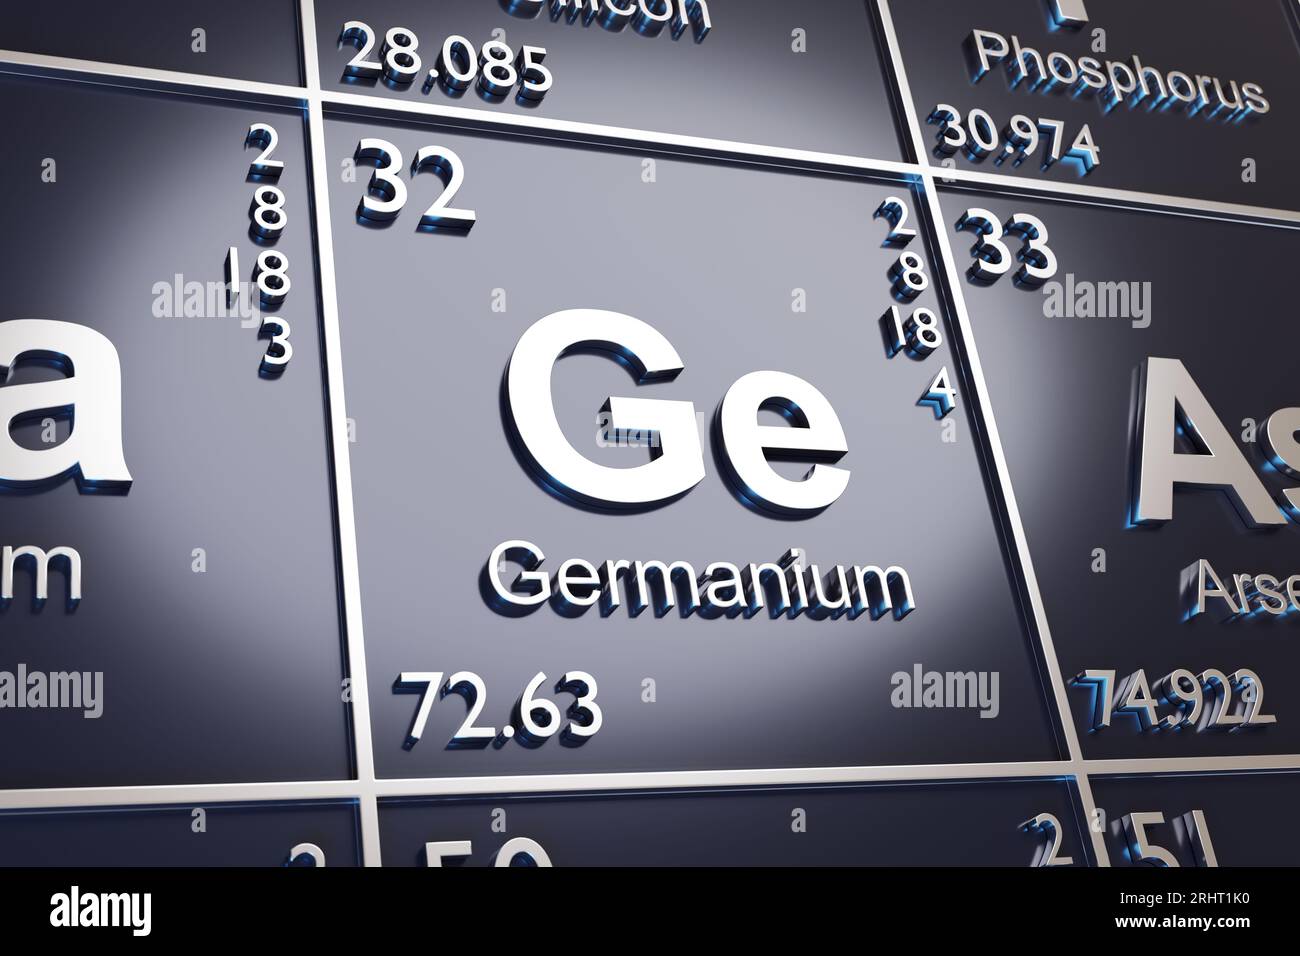 El elemento Germanium en la tabla periódica. 3d ilustración. Foto de stock